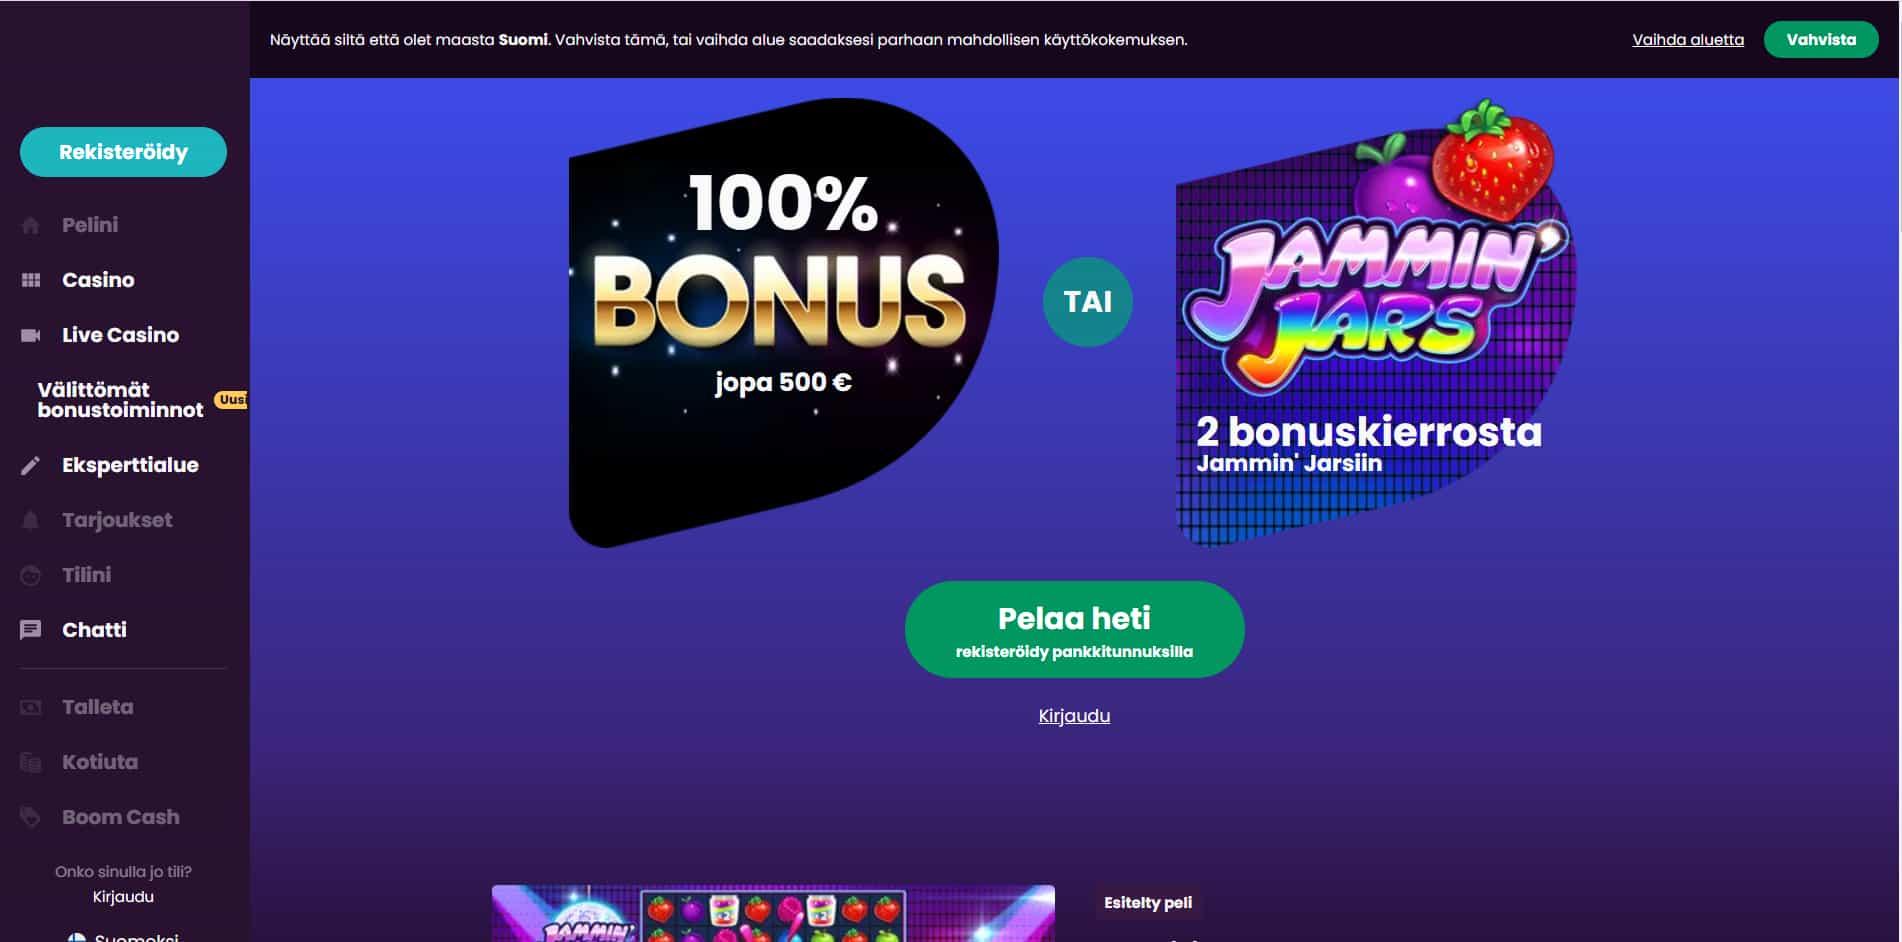 Boom casino homepage